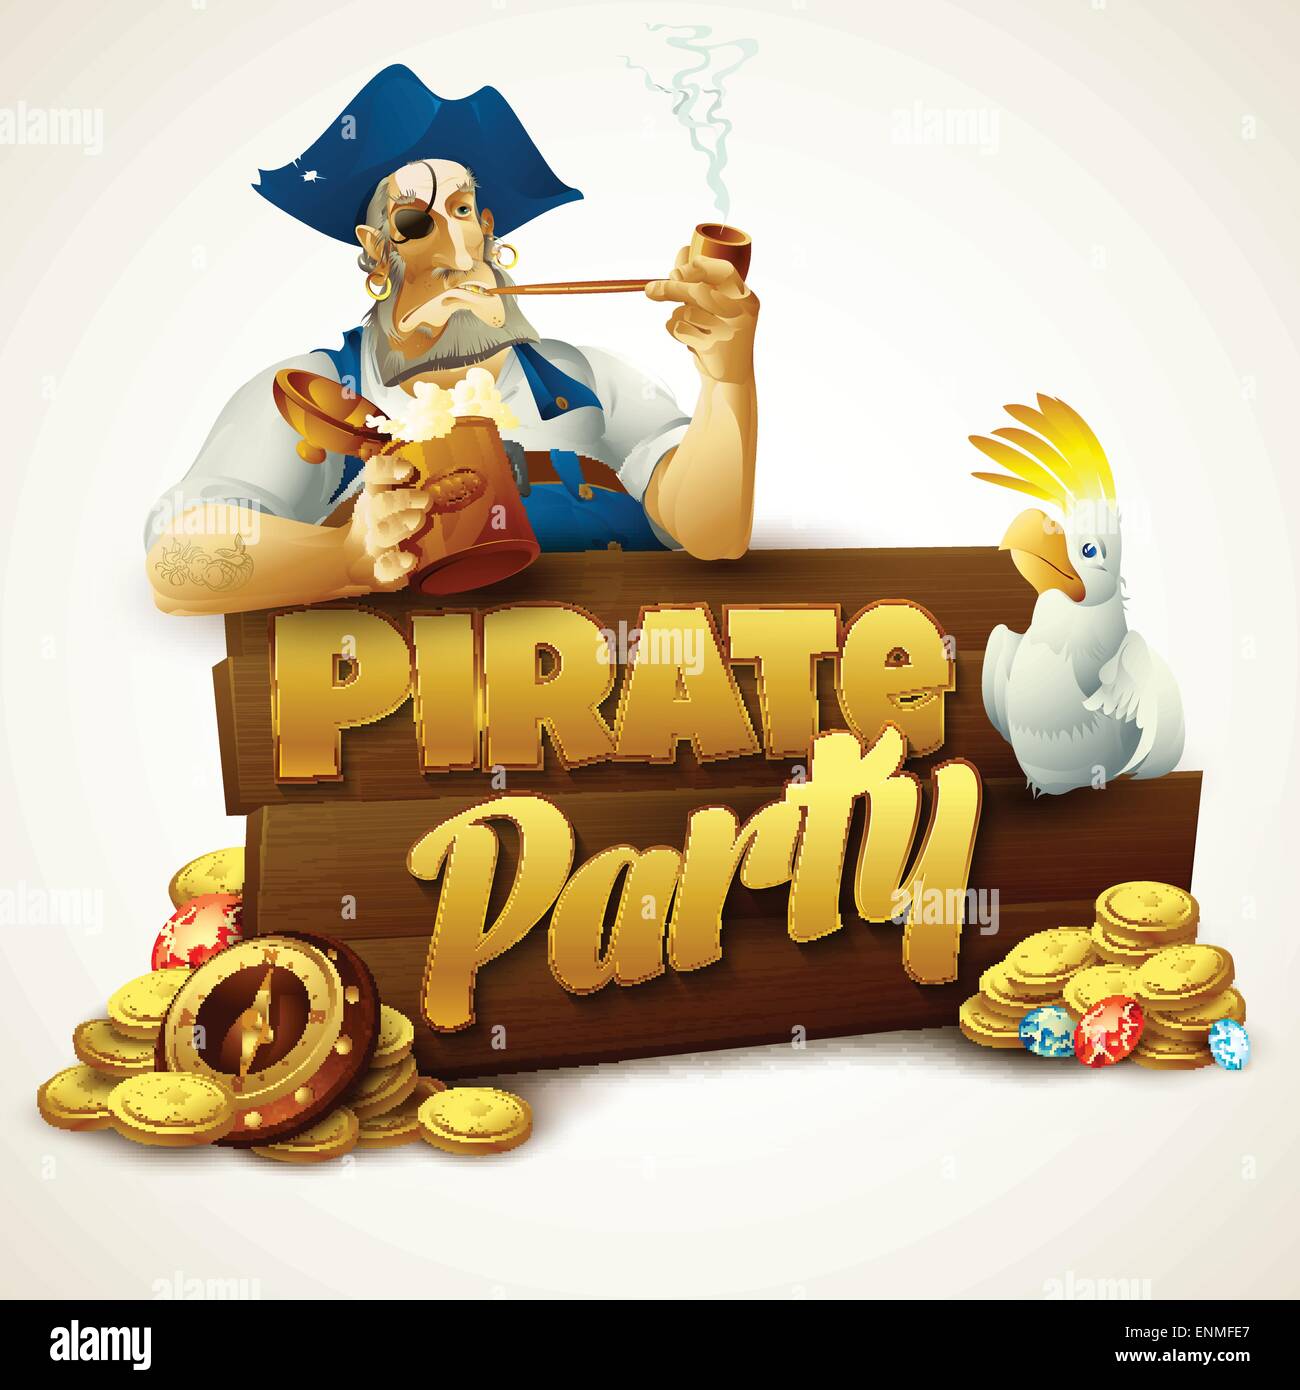 Piraten Partei Plakat. Vektor-Illustration EPS 10 Stock Vektor